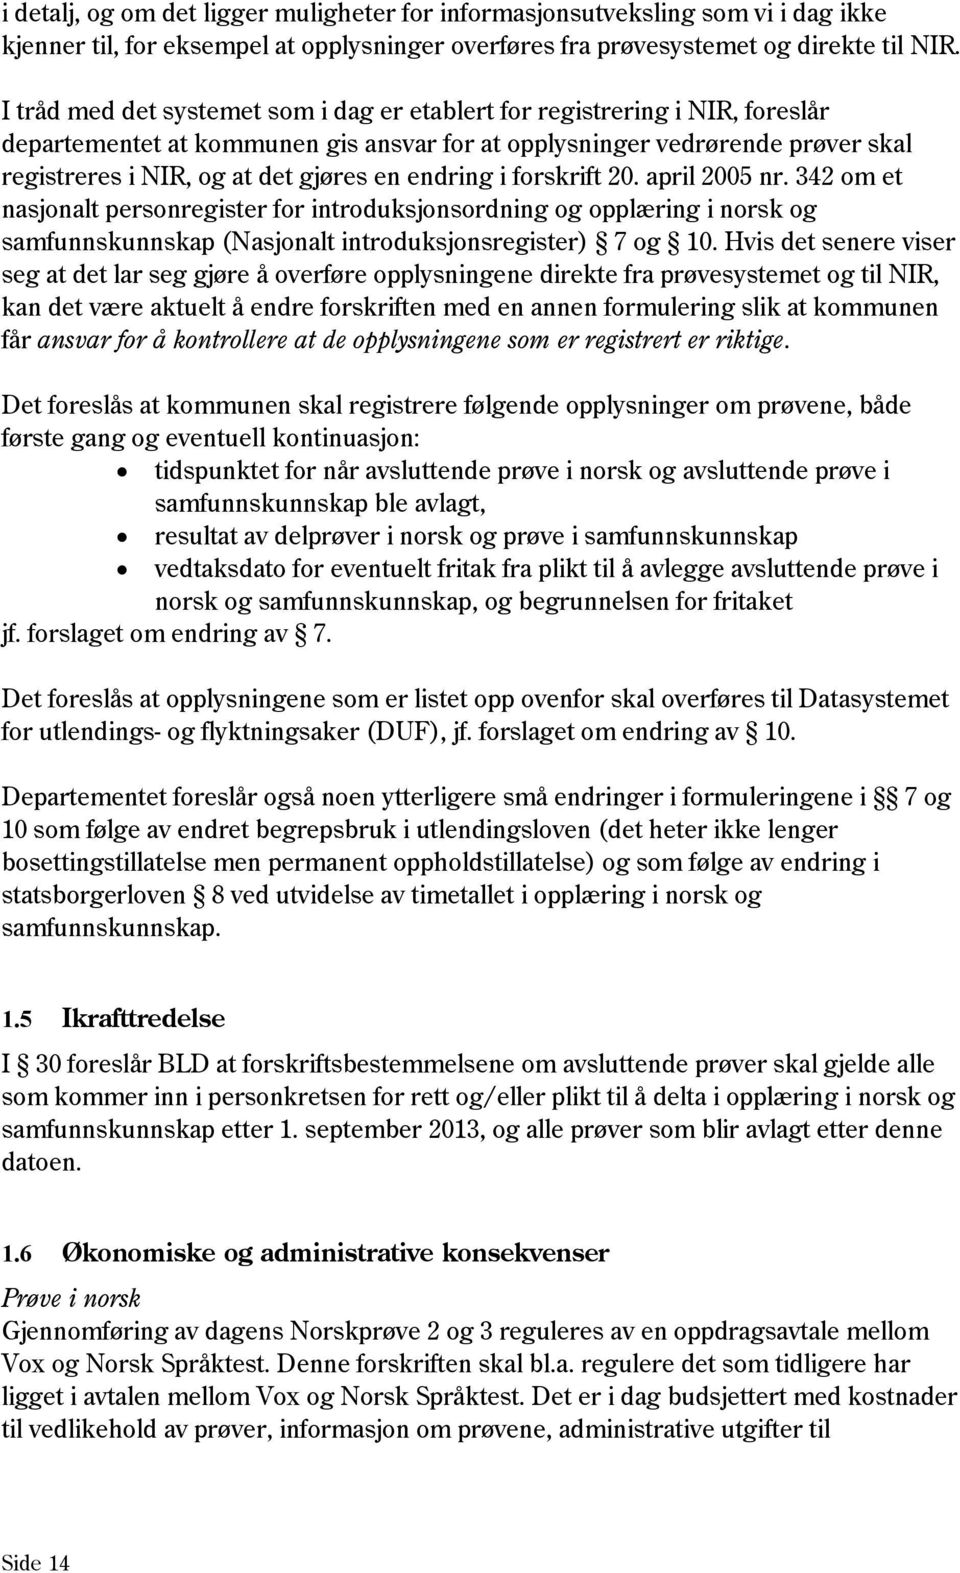 endring i forskrift 20. april 2005 nr. 342 om et nasjonalt personregister for introduksjonsordning og opplæring i norsk og samfunnskunnskap (Nasjonalt introduksjonsregister) 7 og 10.